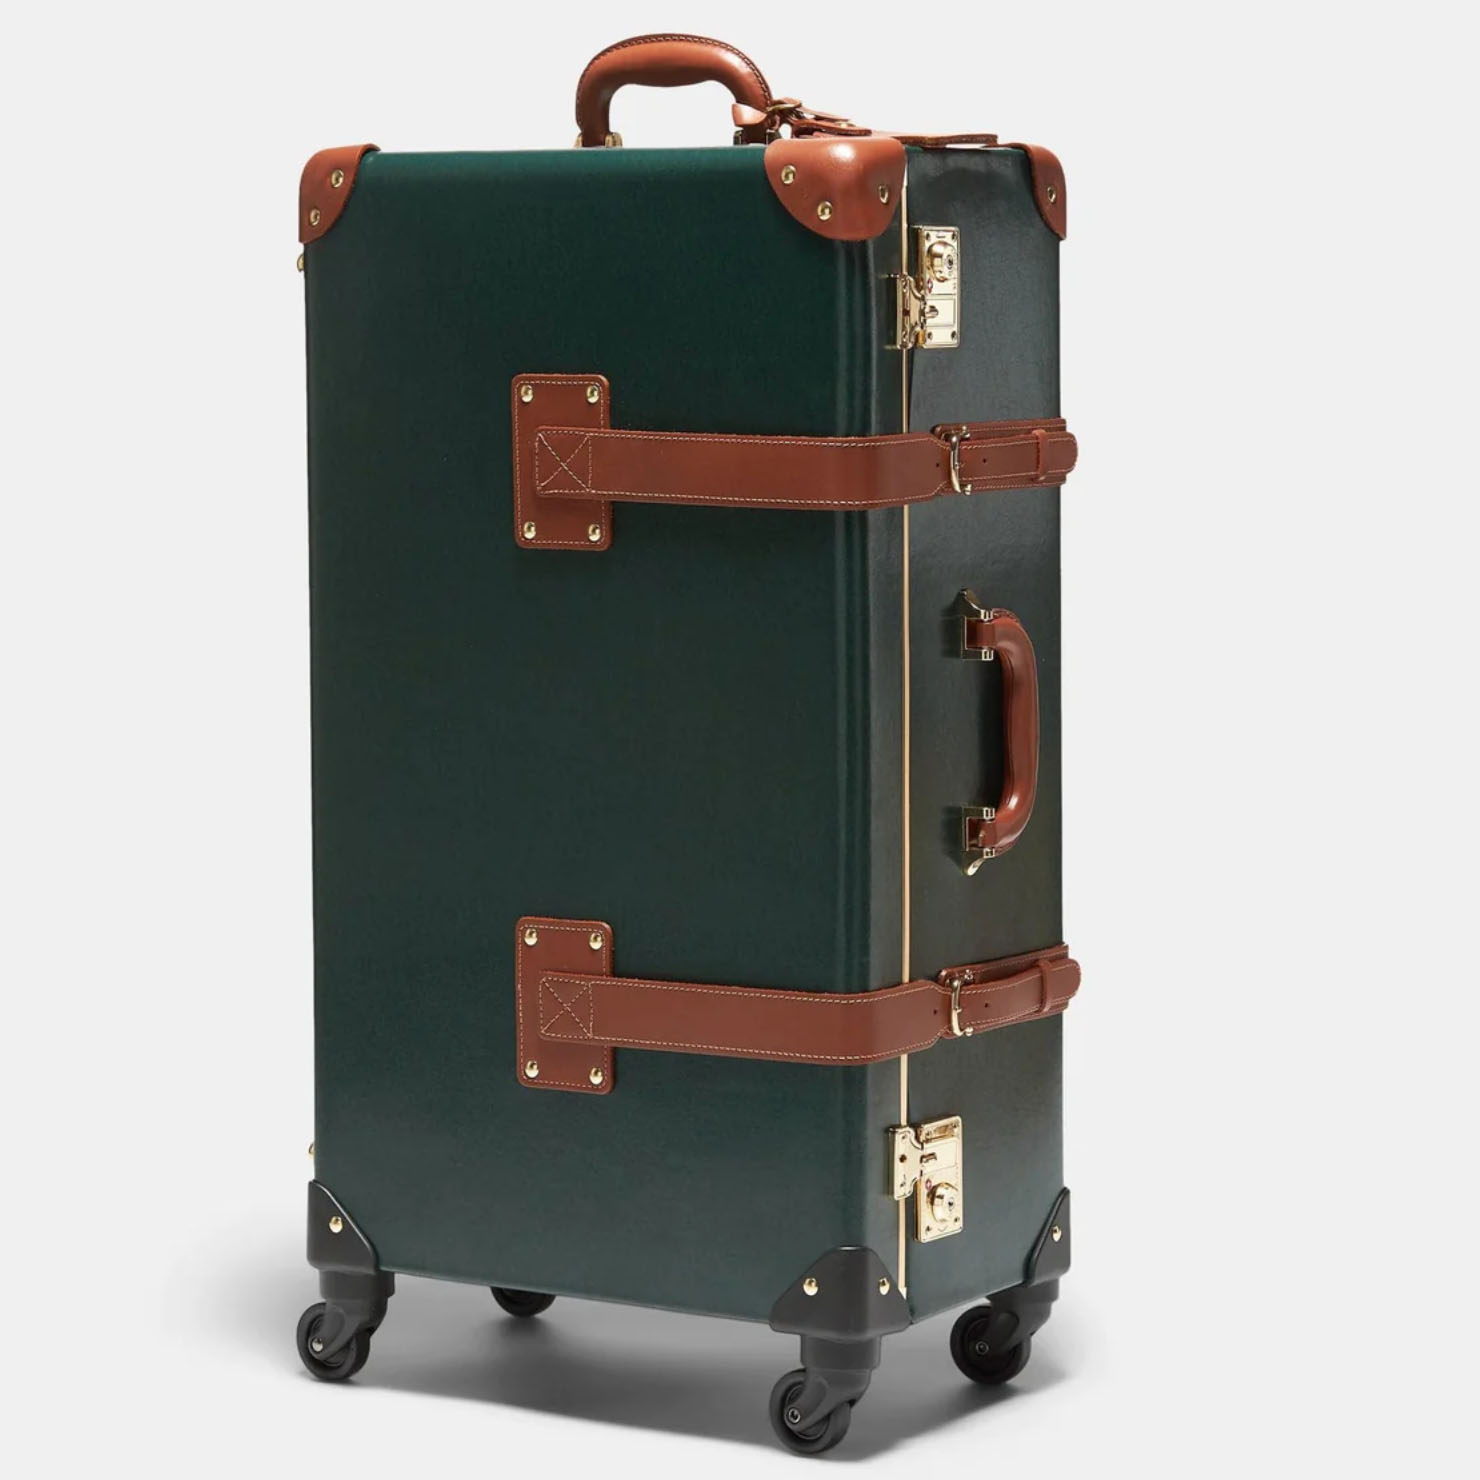 Green designer hardcase luggage